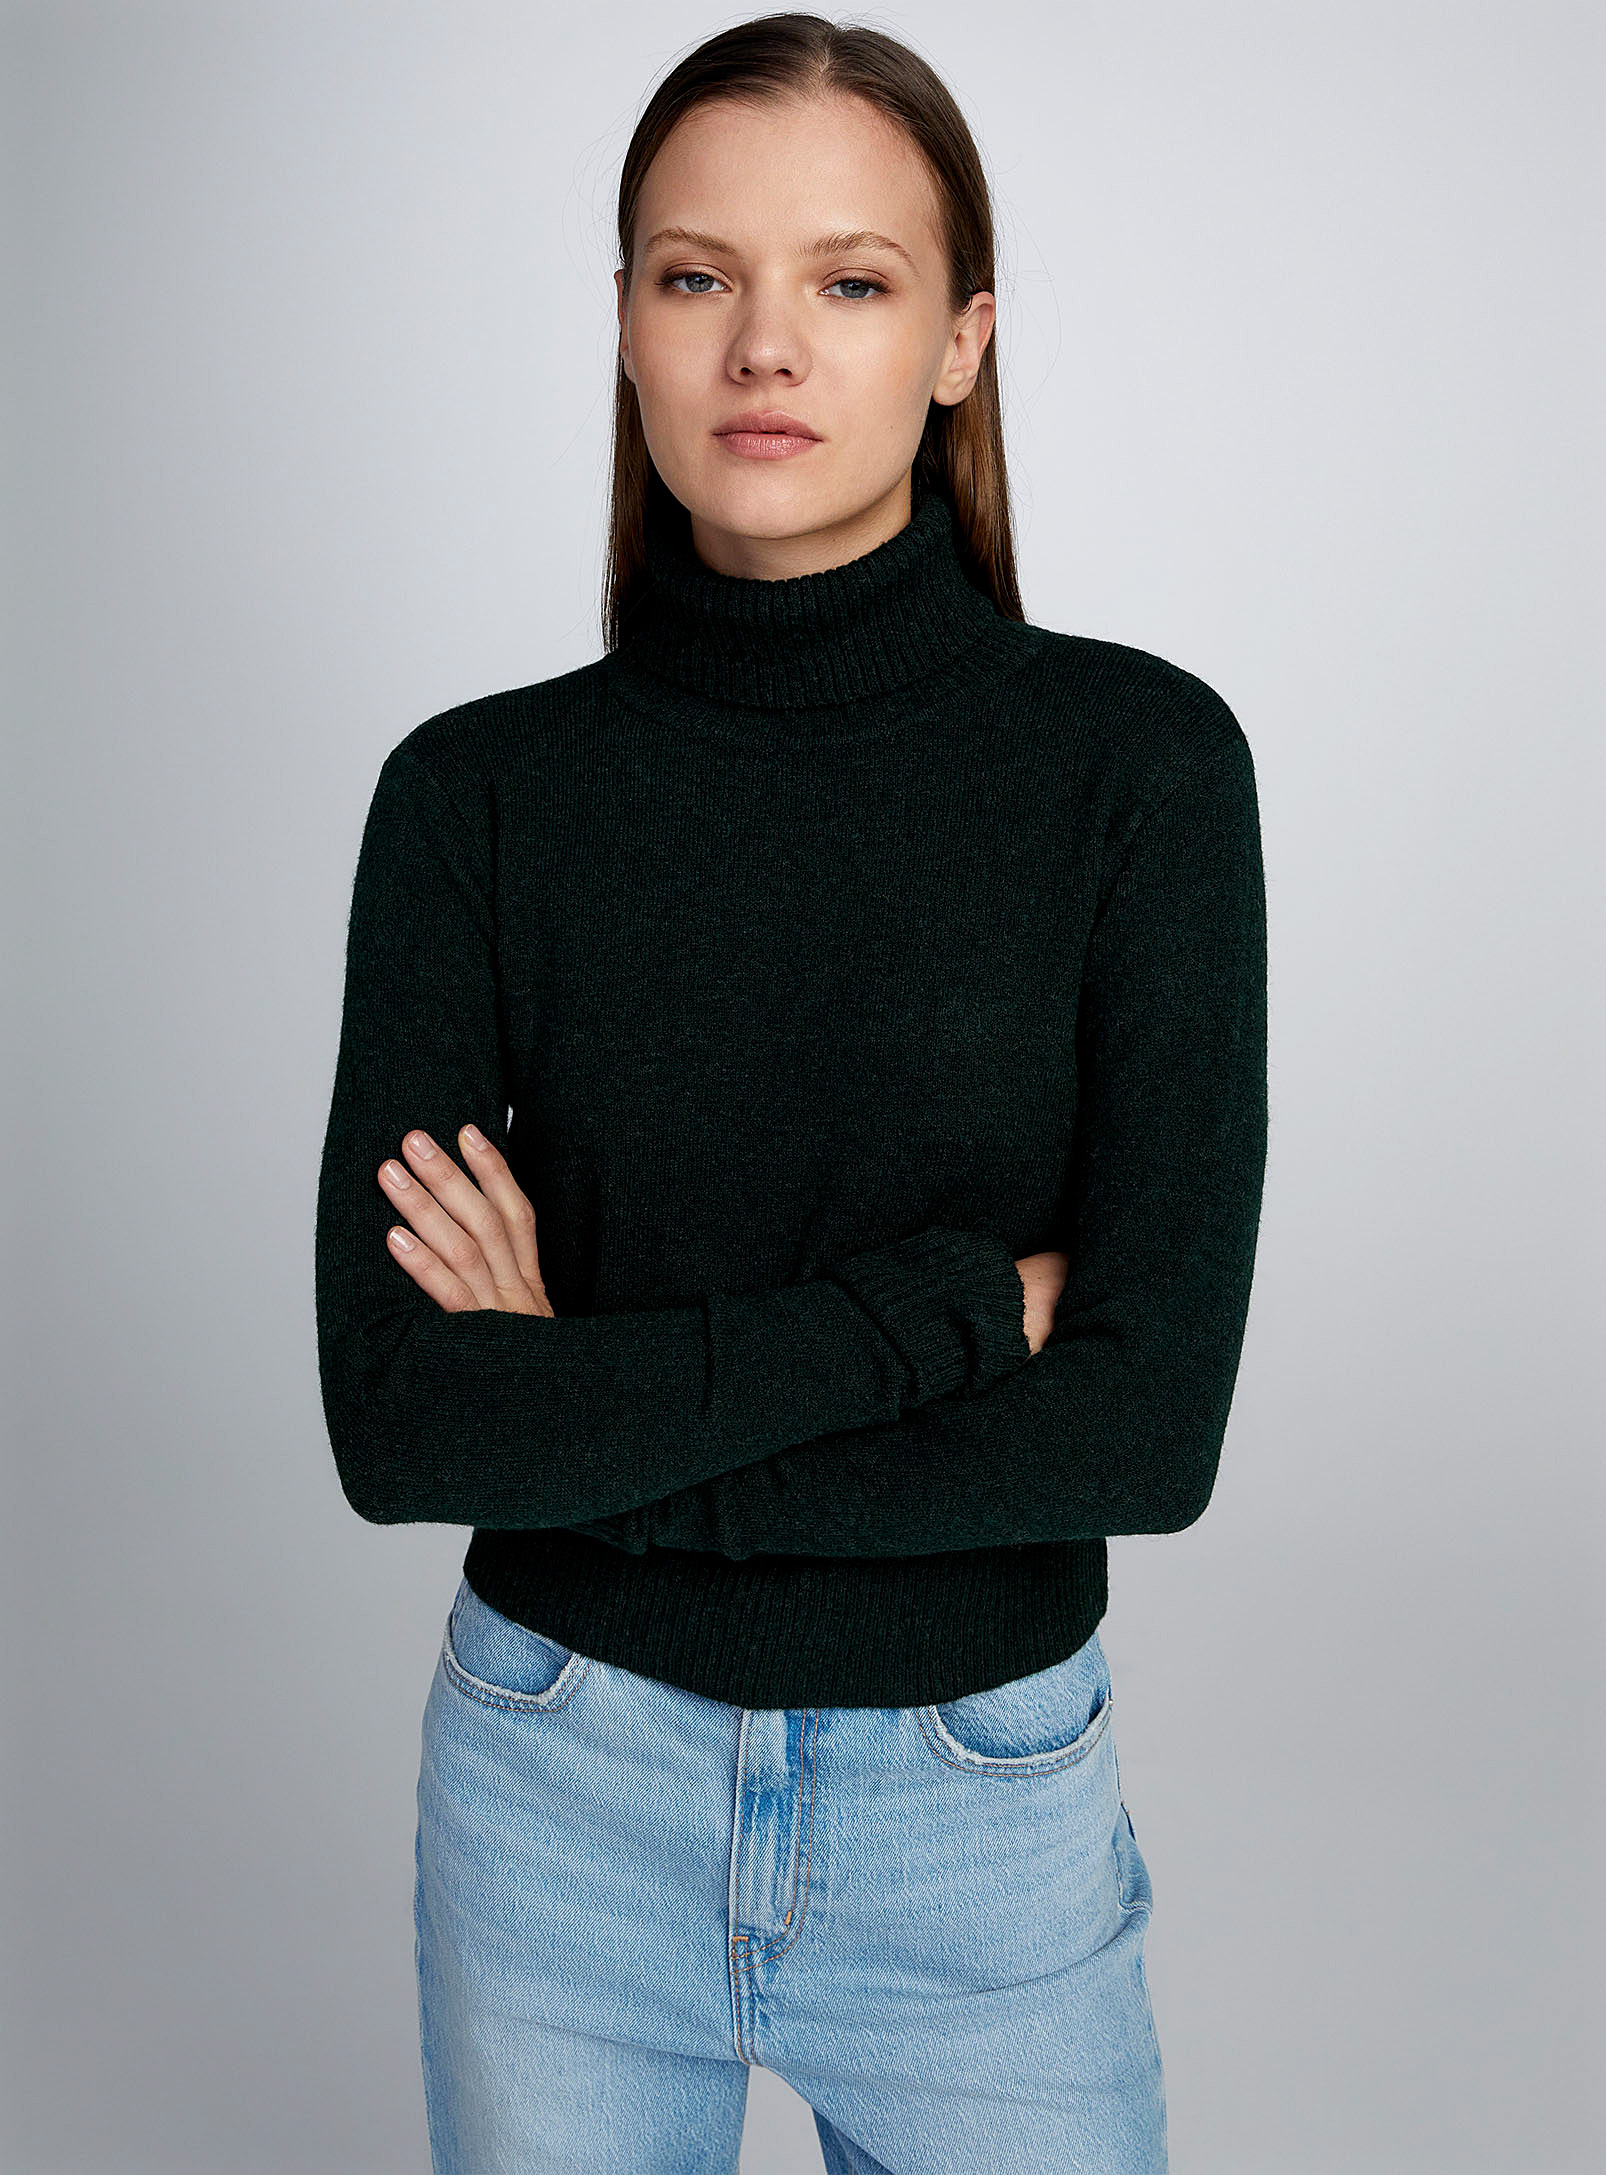 Twik - Women's Plain turtleneck sweater